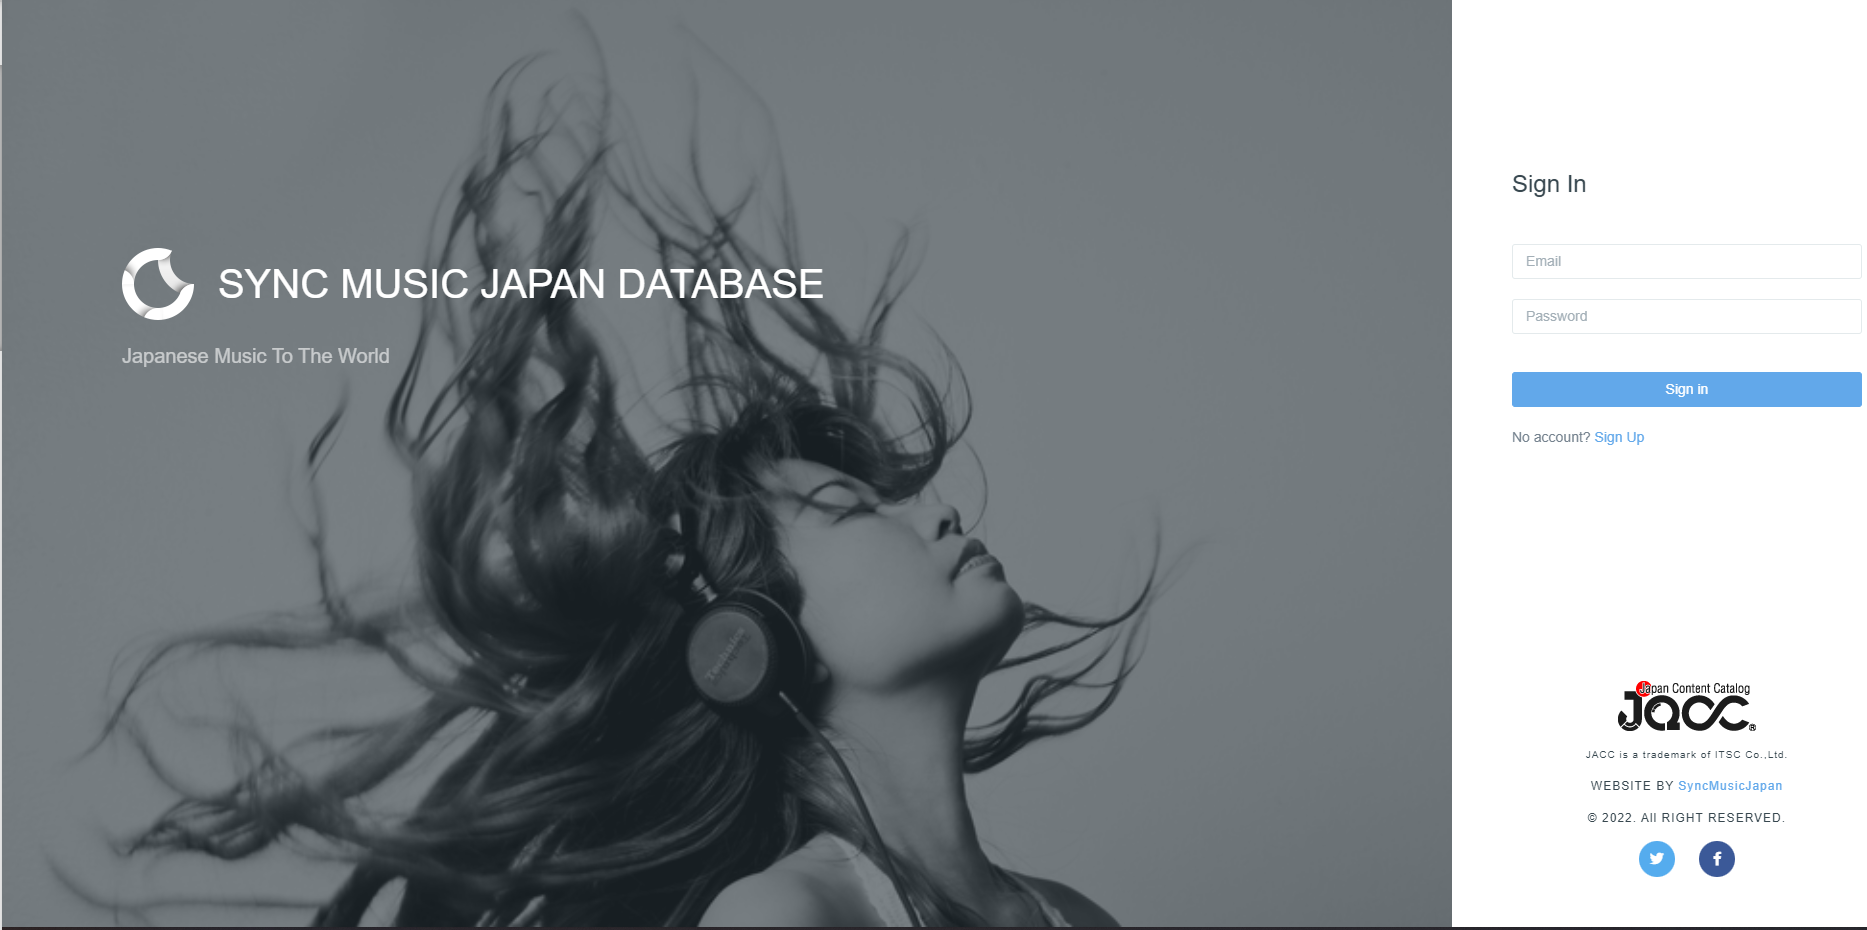 日本コンテンツの著作権の権利関連情報を集約したデータベースプロジェクト